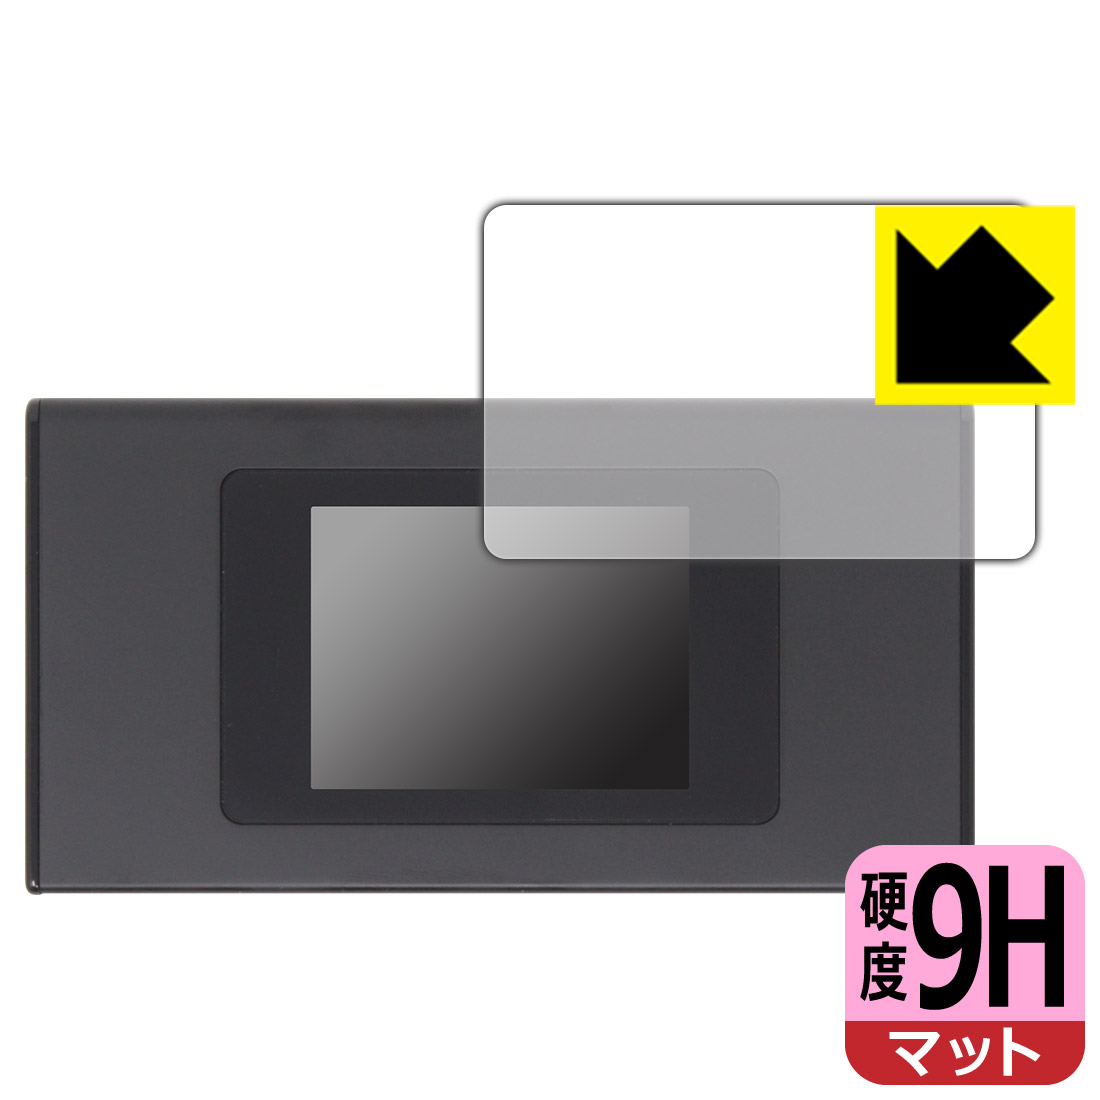 【おまけ付】PDA工房 モバイルWi-Fiルーター MR1 (MS4GRA01)対応 9H高硬度[反射低減] 保護 フィルム [画面用] 日本製 自社製造直販